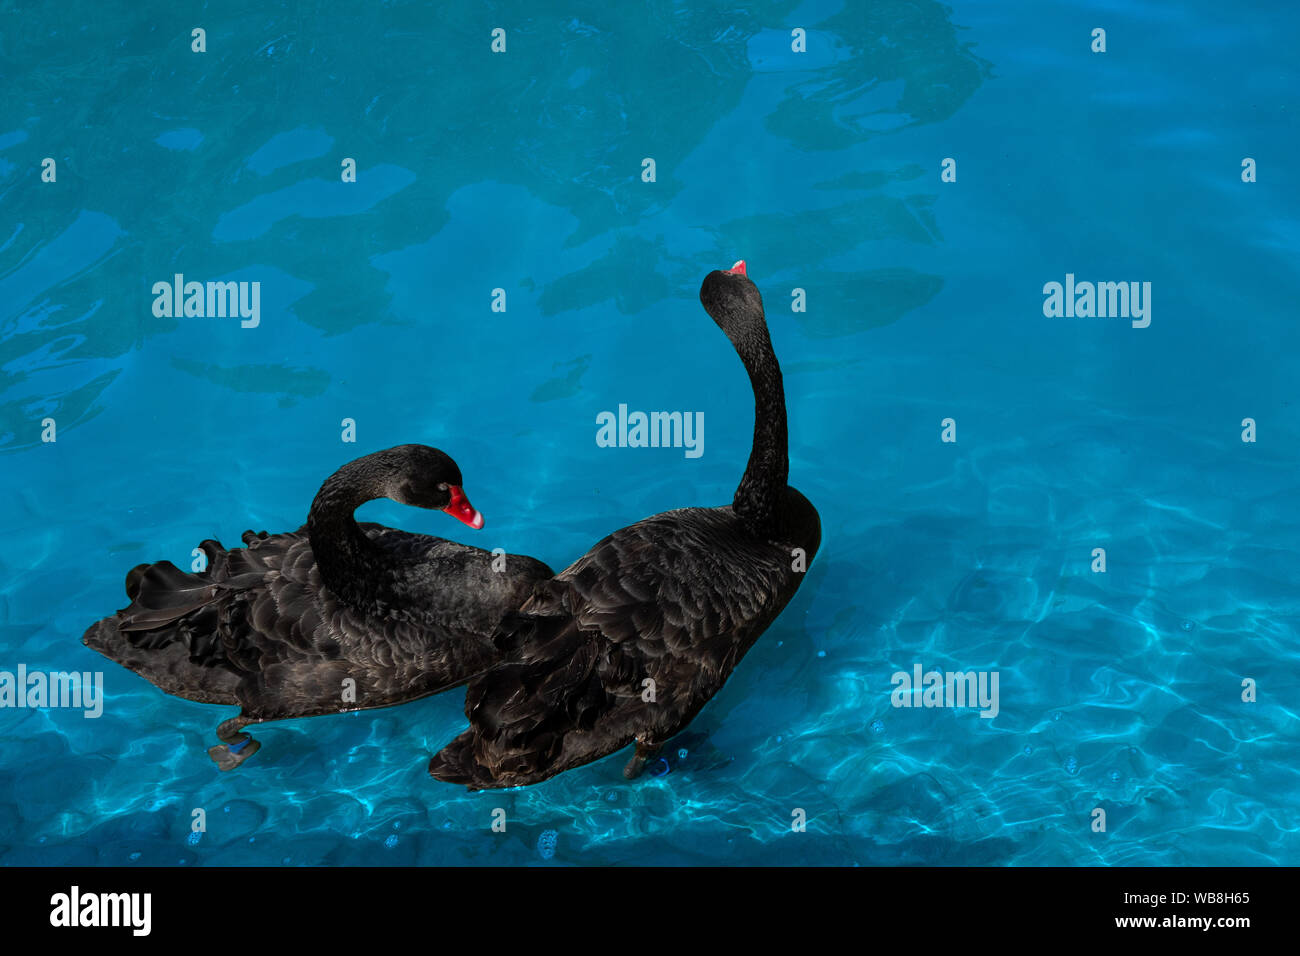 Paar schwarze Schwäne im Teich. Zwei Vögel mit roten Schnäbel Schwimmen im blauen Wasser des Sees. Liebe Symbol oder romantische Beziehungen Stockfoto